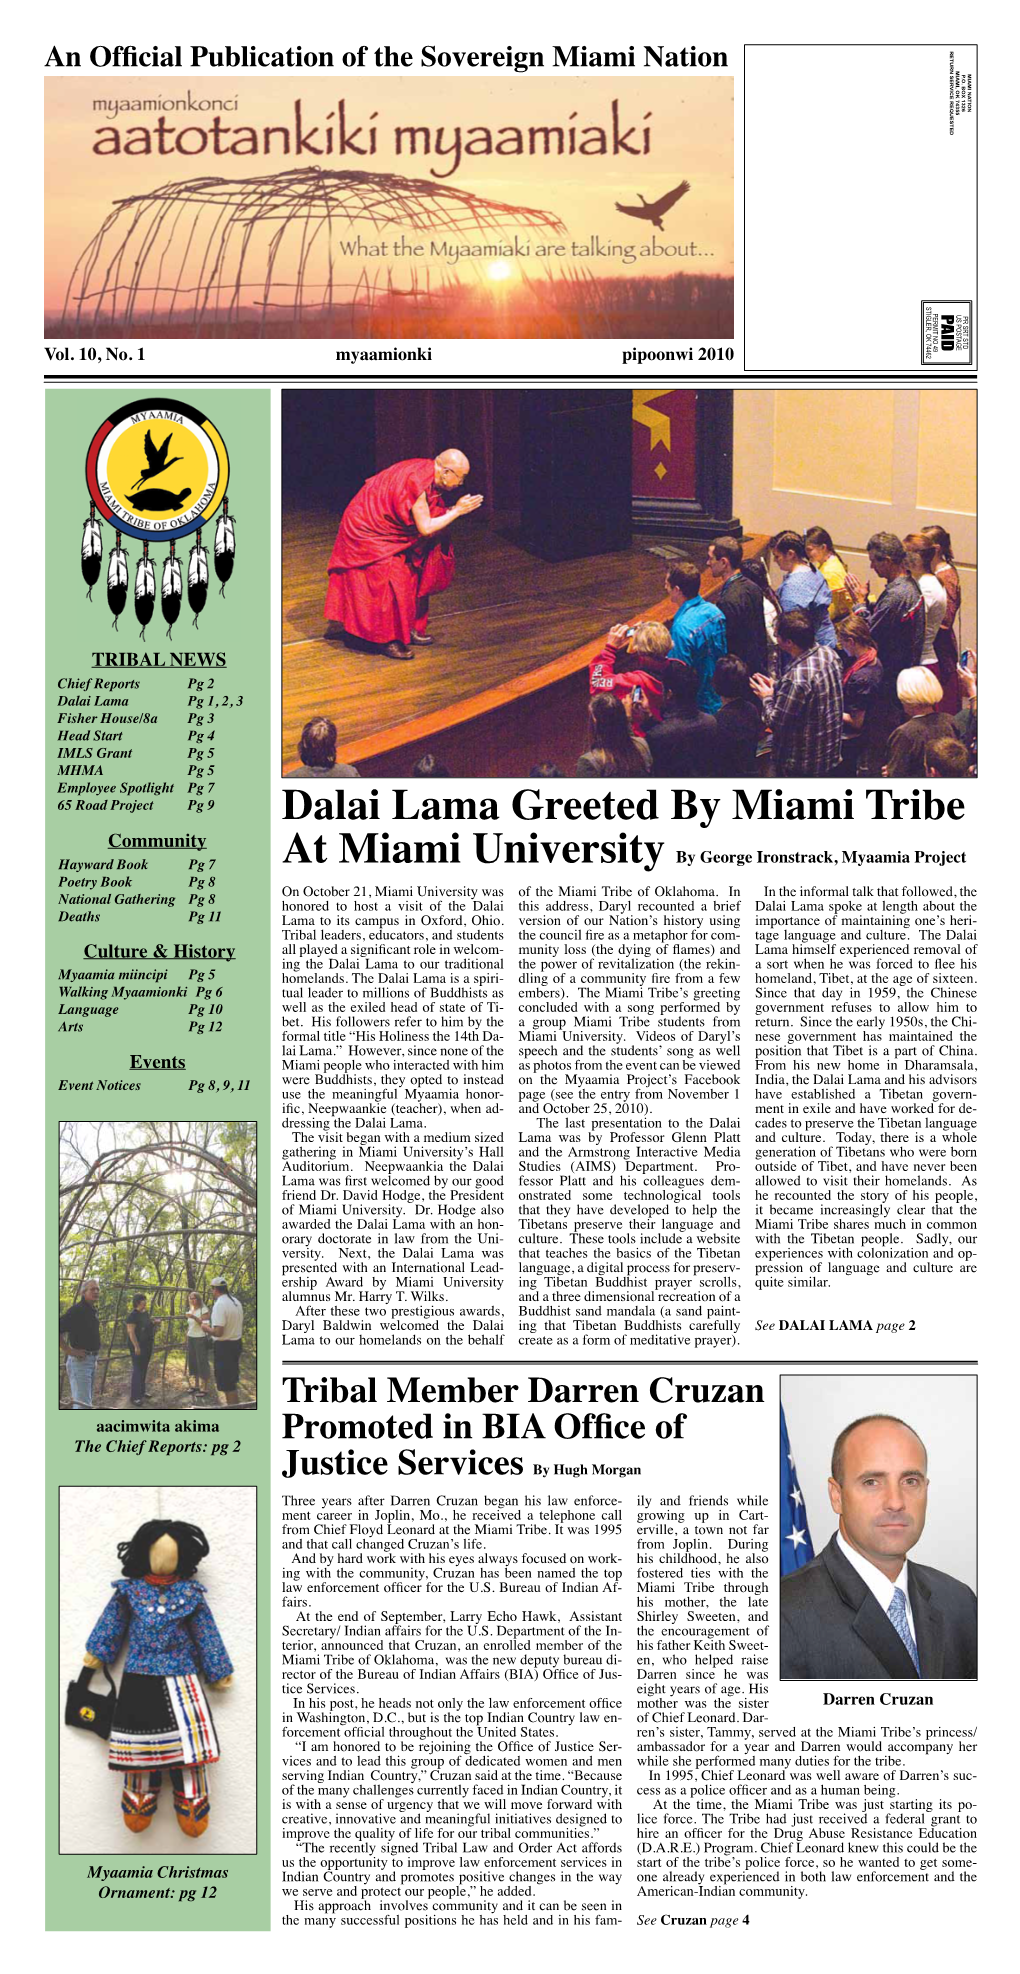 Dalai Lama Greeted by Miami Tribe